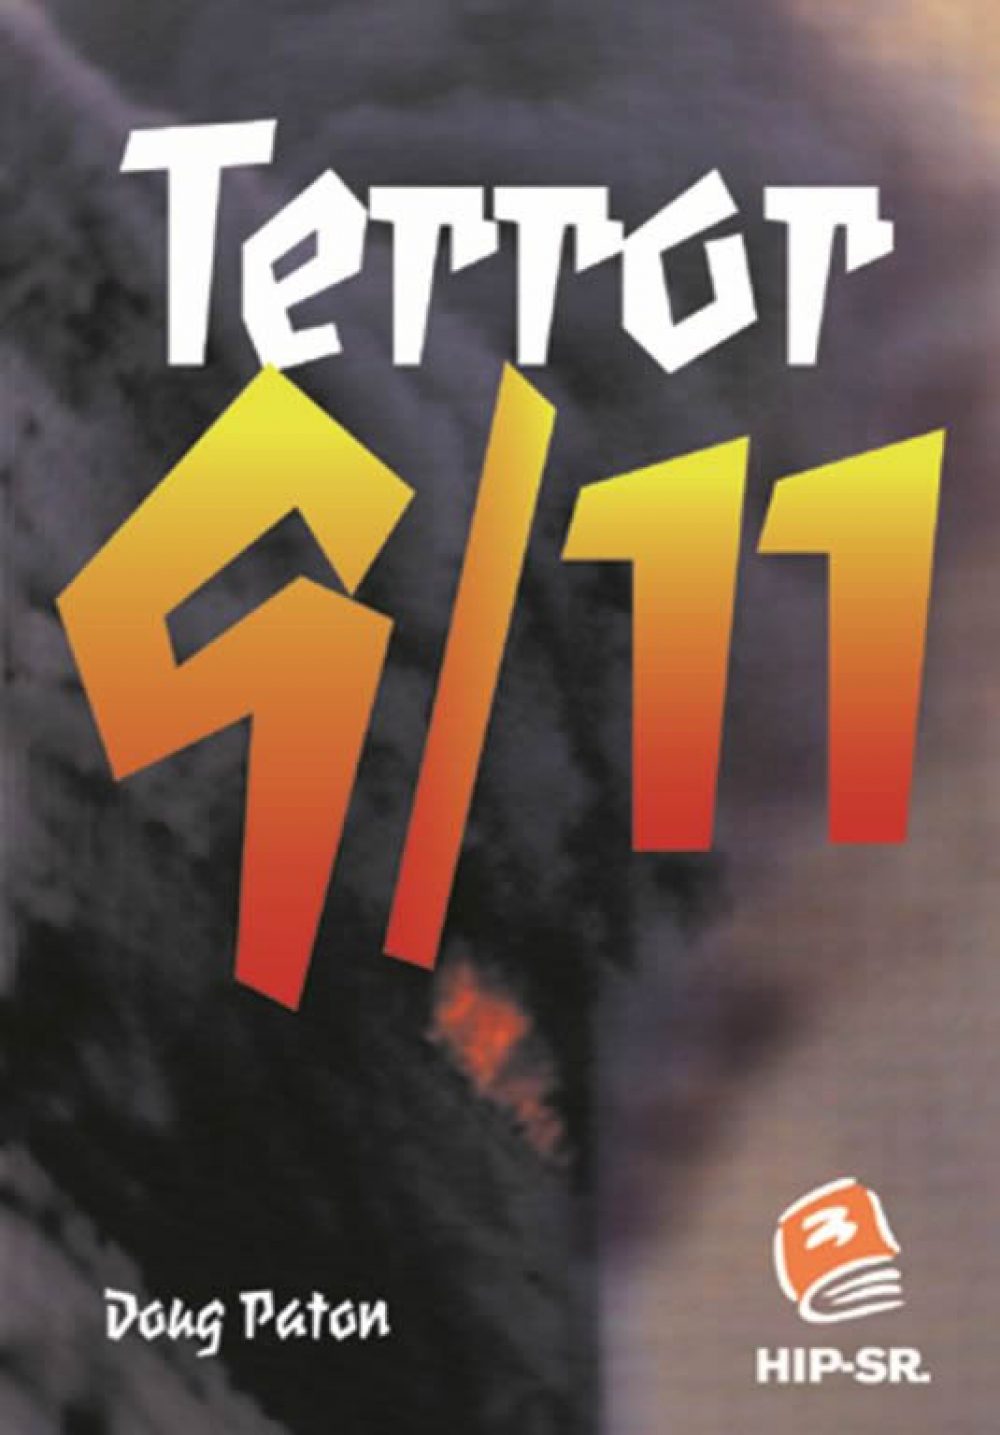 Terror 9/11 Book Cover